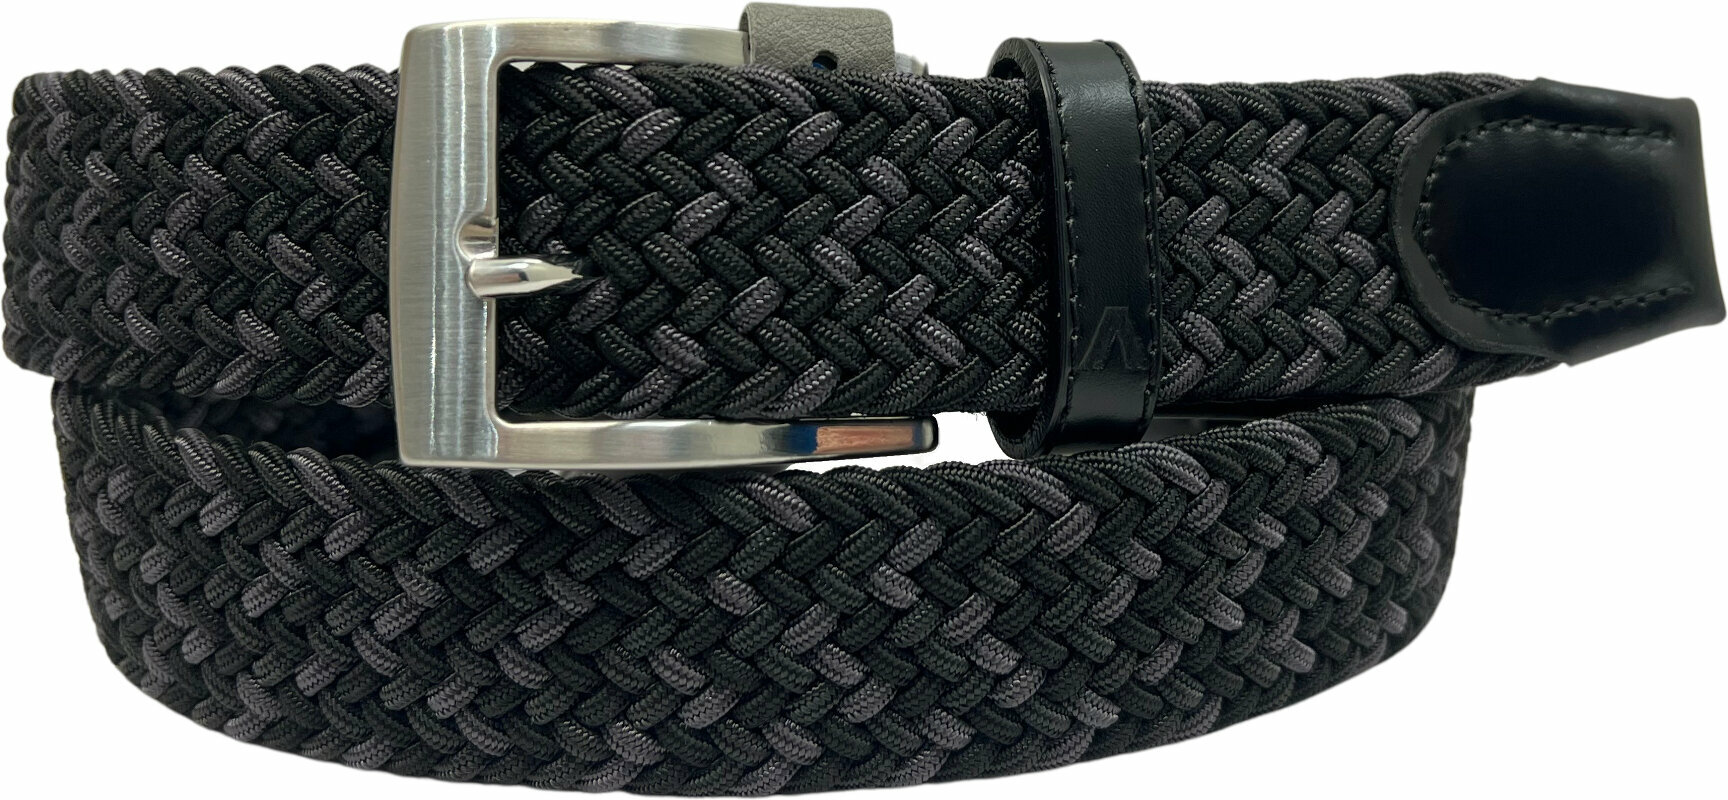 Belt Alberto Gürtel Multicolor Braided Belt Black/Grey 85